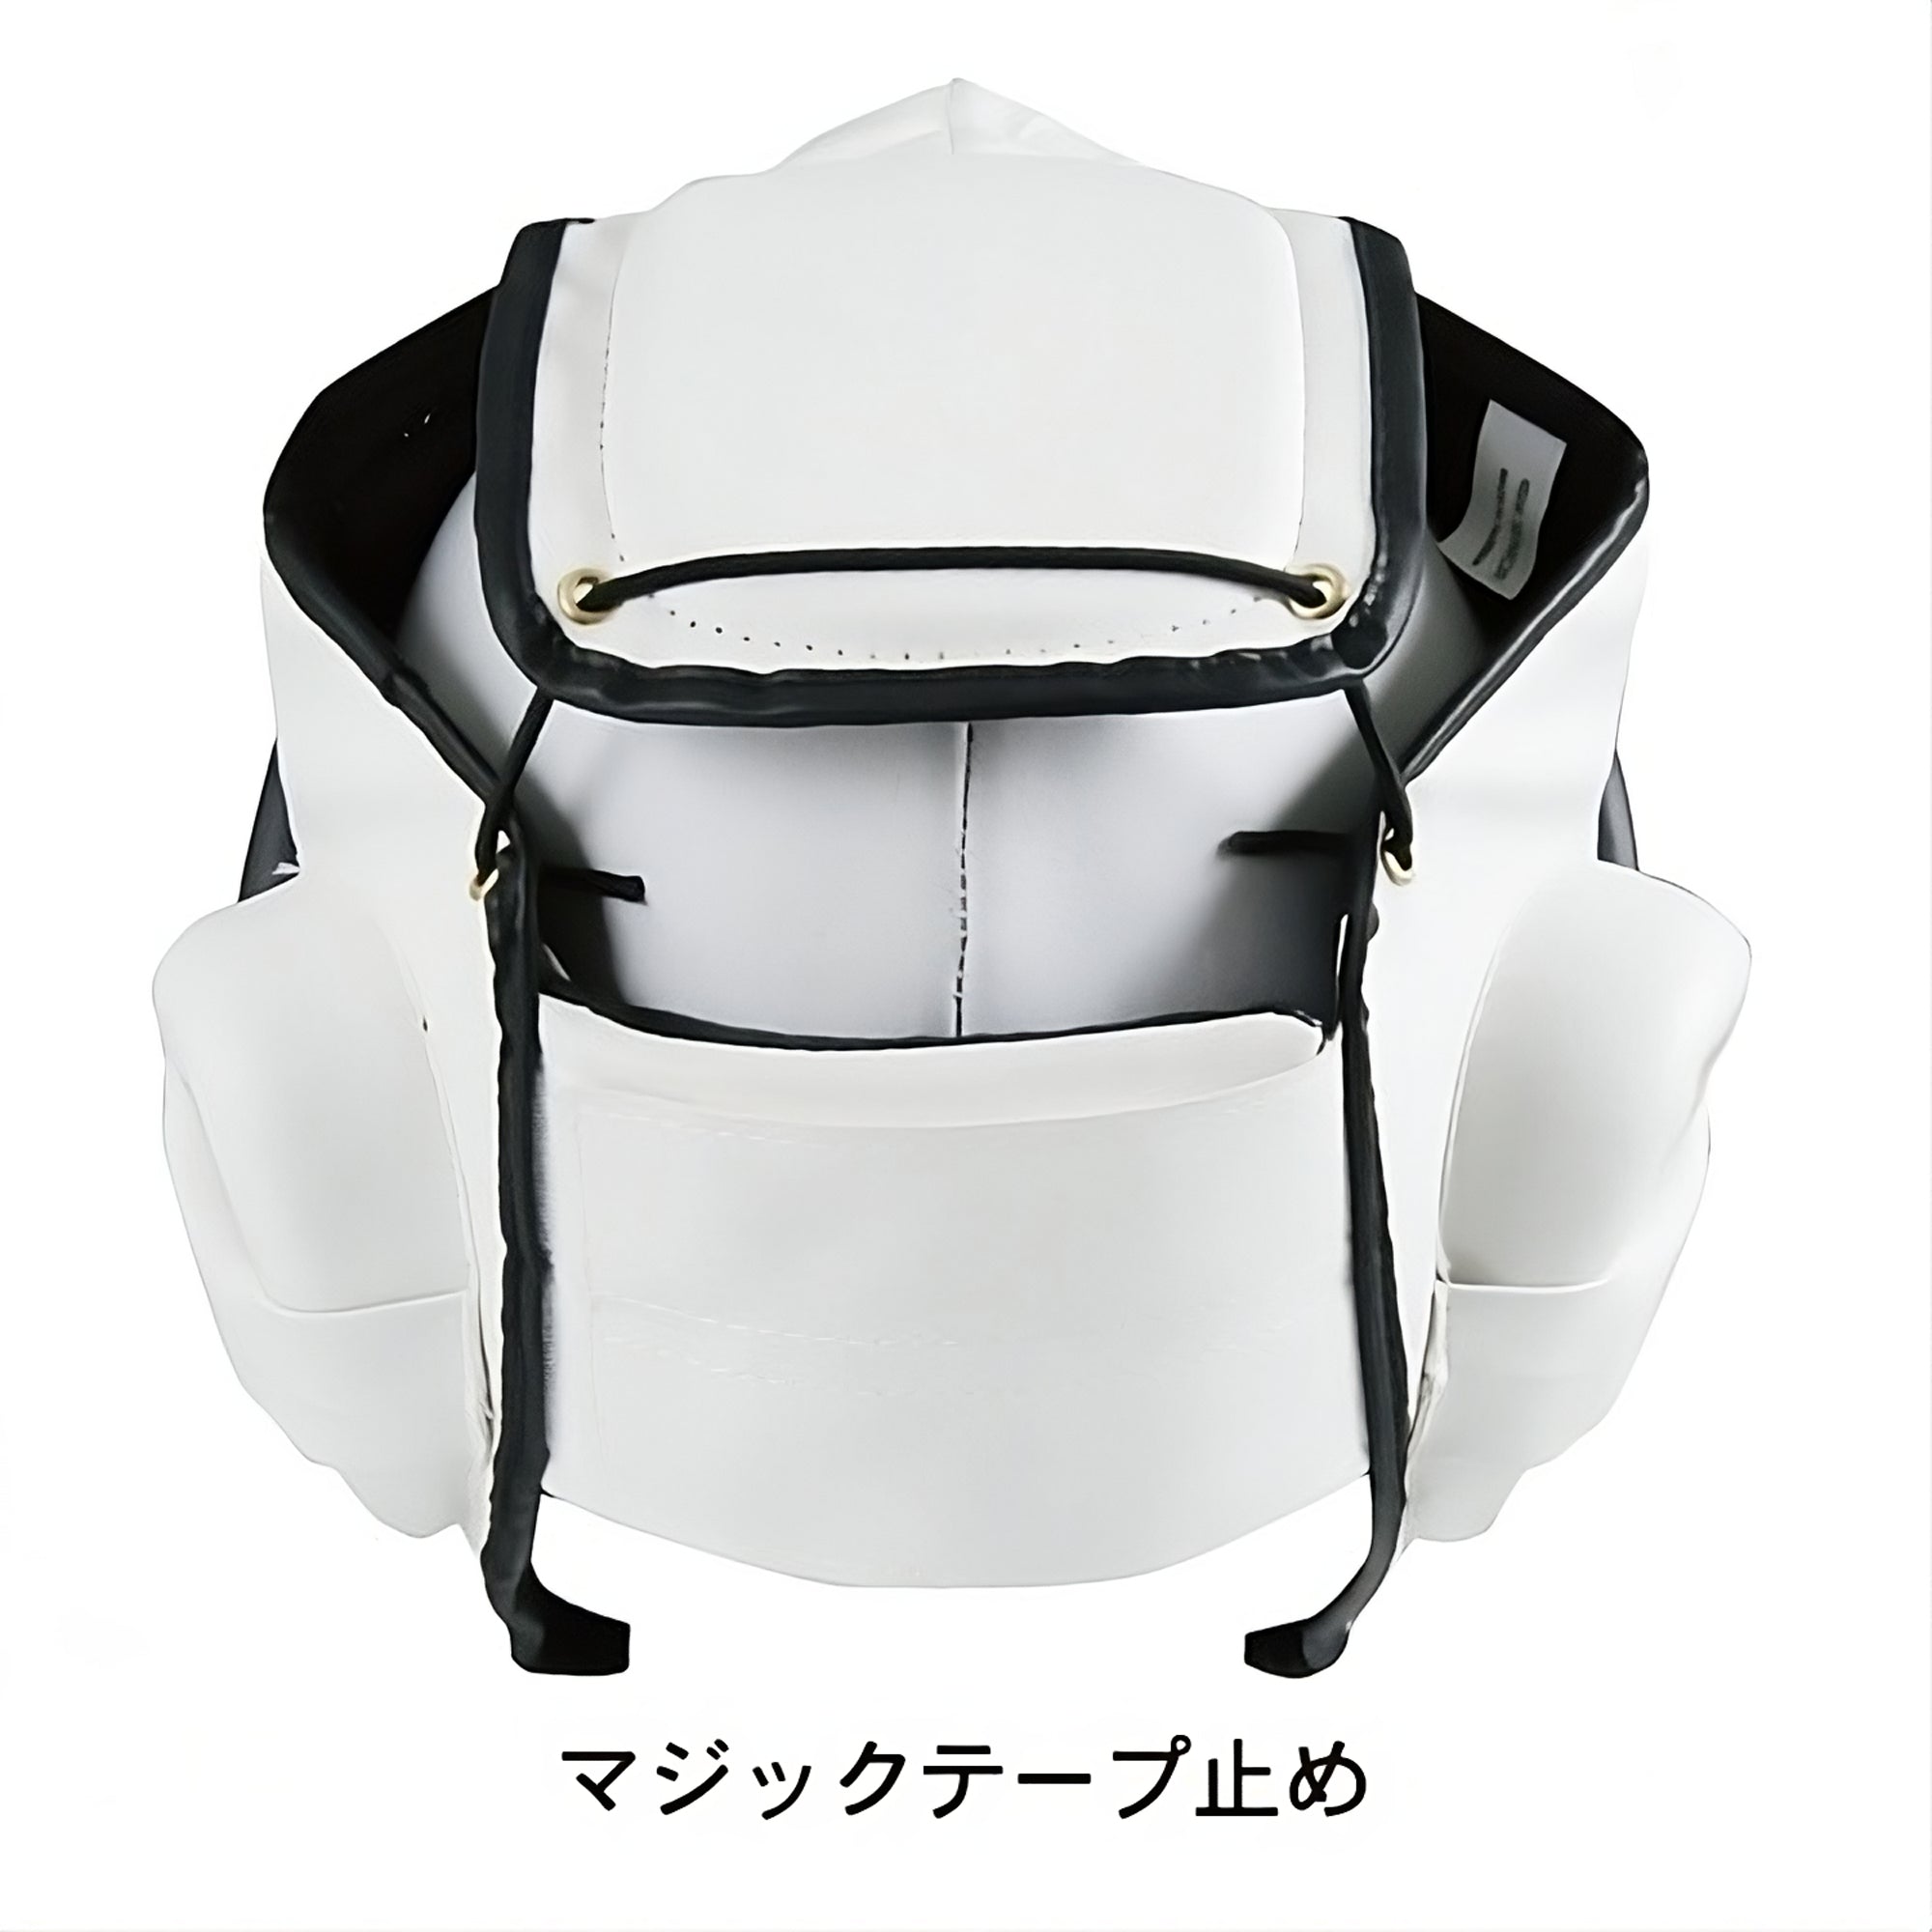 Kudo Daido Juku Helmet-Isami-ChokeSports